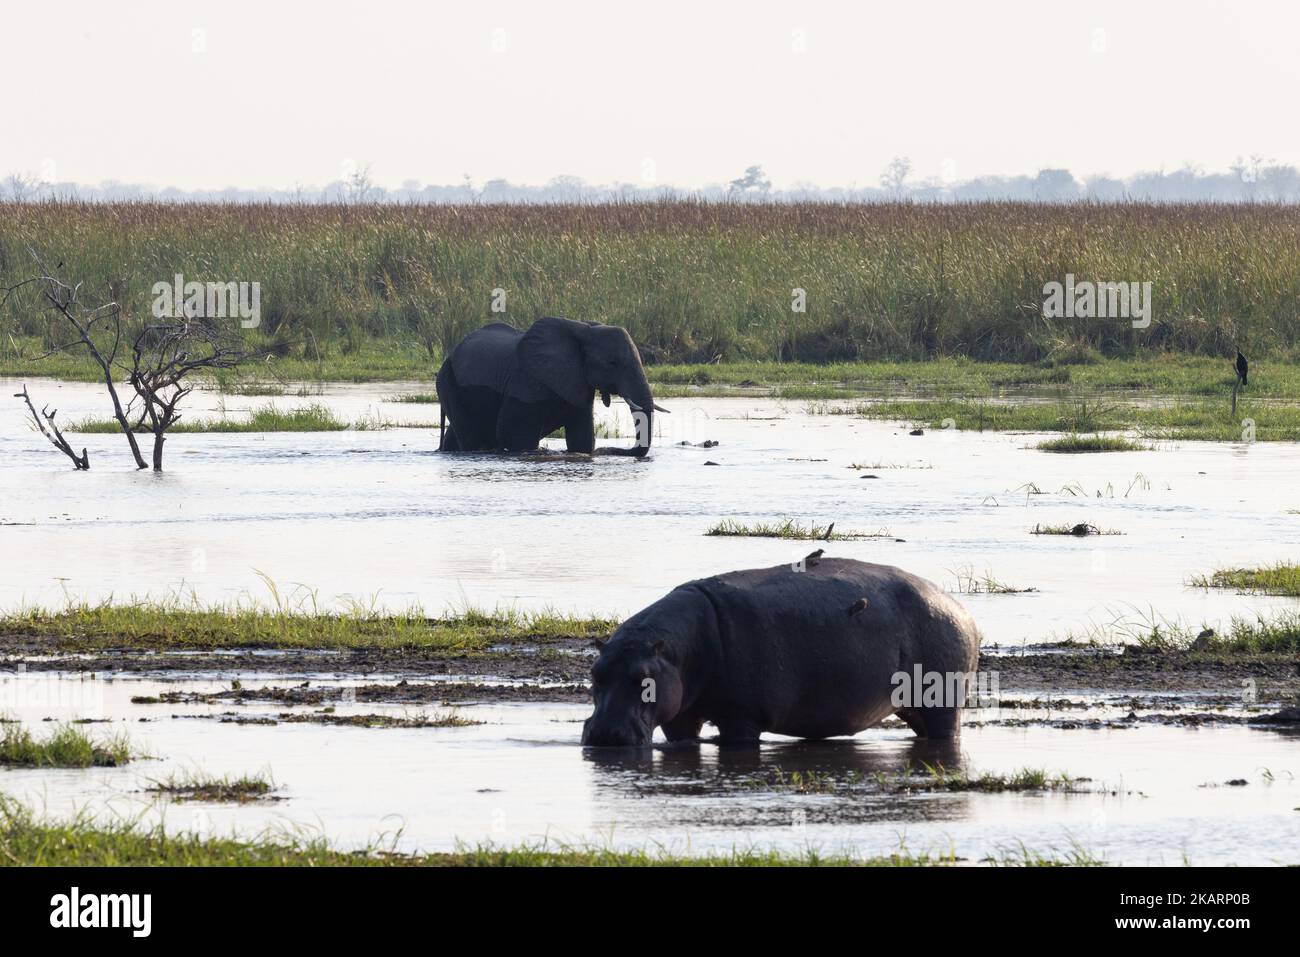 Animaux sauvages dans une scène de paysage d'Okavango, hippopotame et éléphant dans l'eau au crépuscule, delta d'Okavango, Botswana Afrique. Animaux africains Banque D'Images